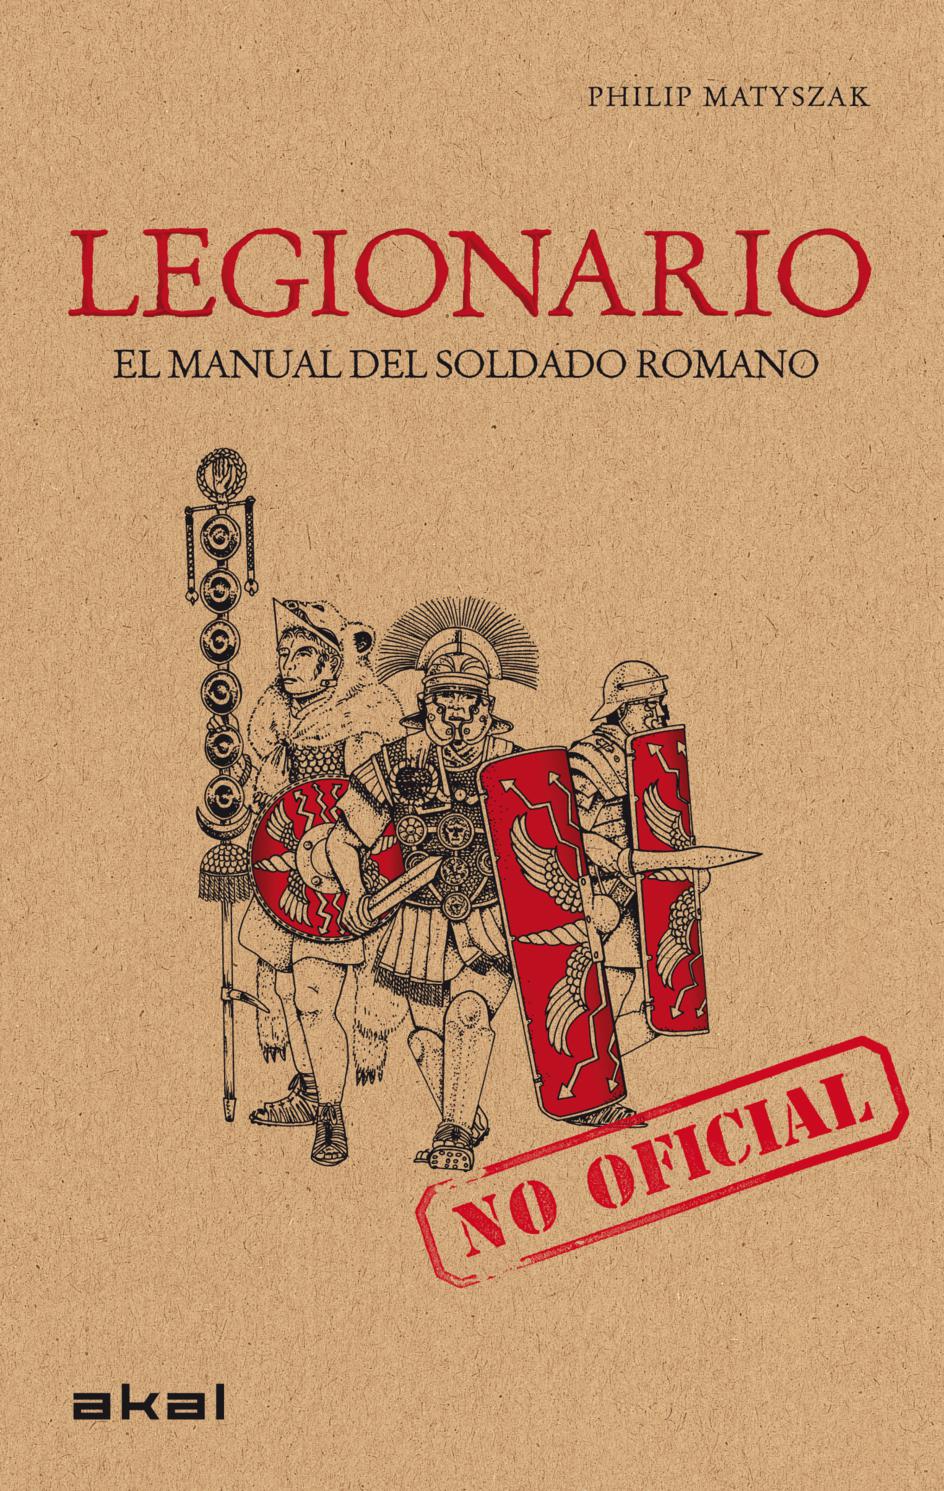 Resultado de imagen de manual del legionario romano